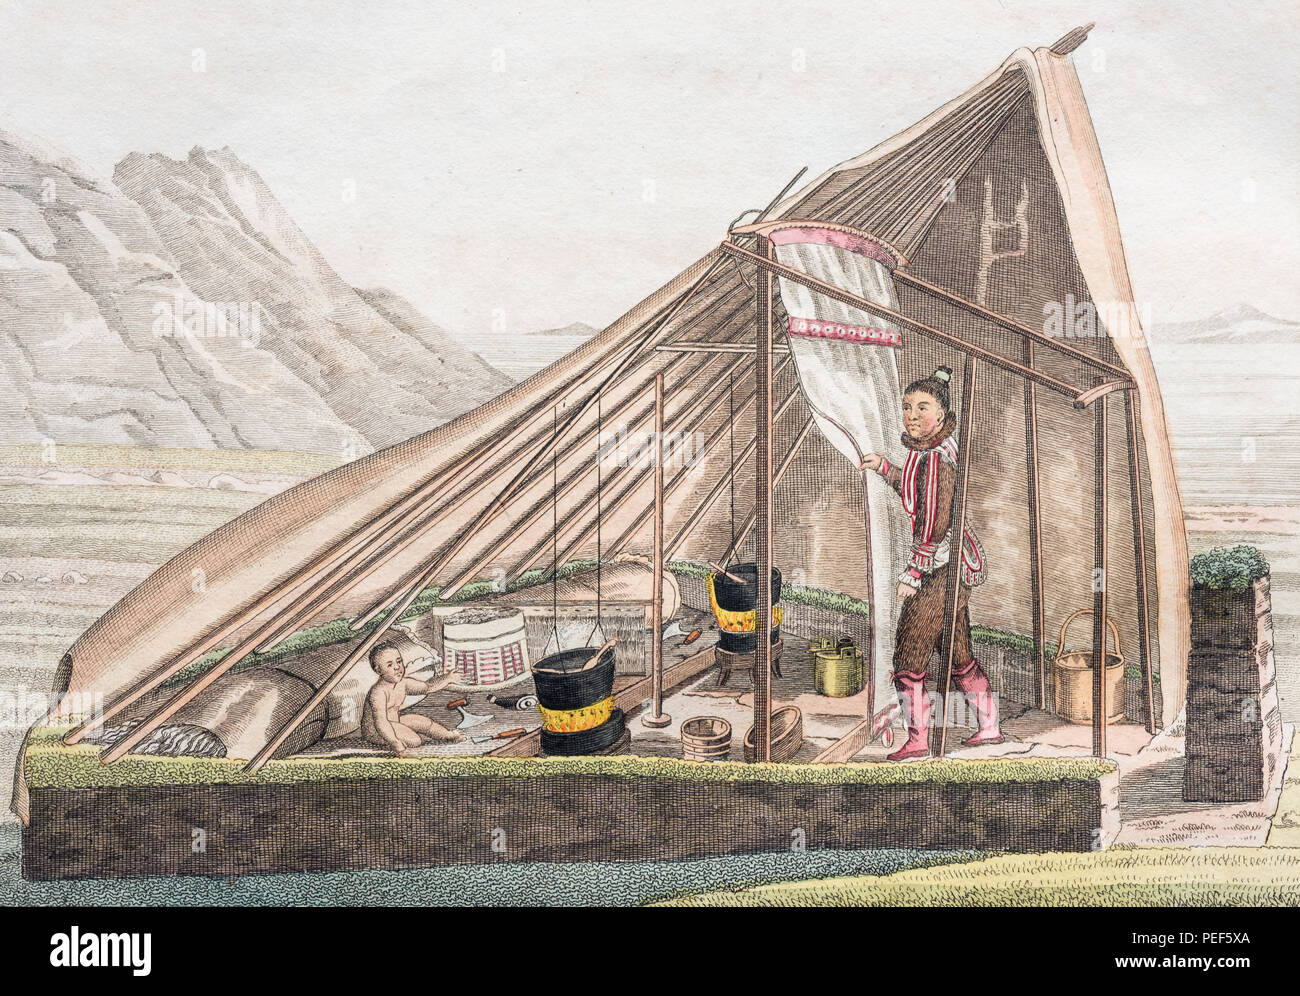 Tente d'été des Groenlandais, à la main, gravure sur cuivre de Friedrich Justin Bertuch livre d'images pour enfants, 1830 Banque D'Images